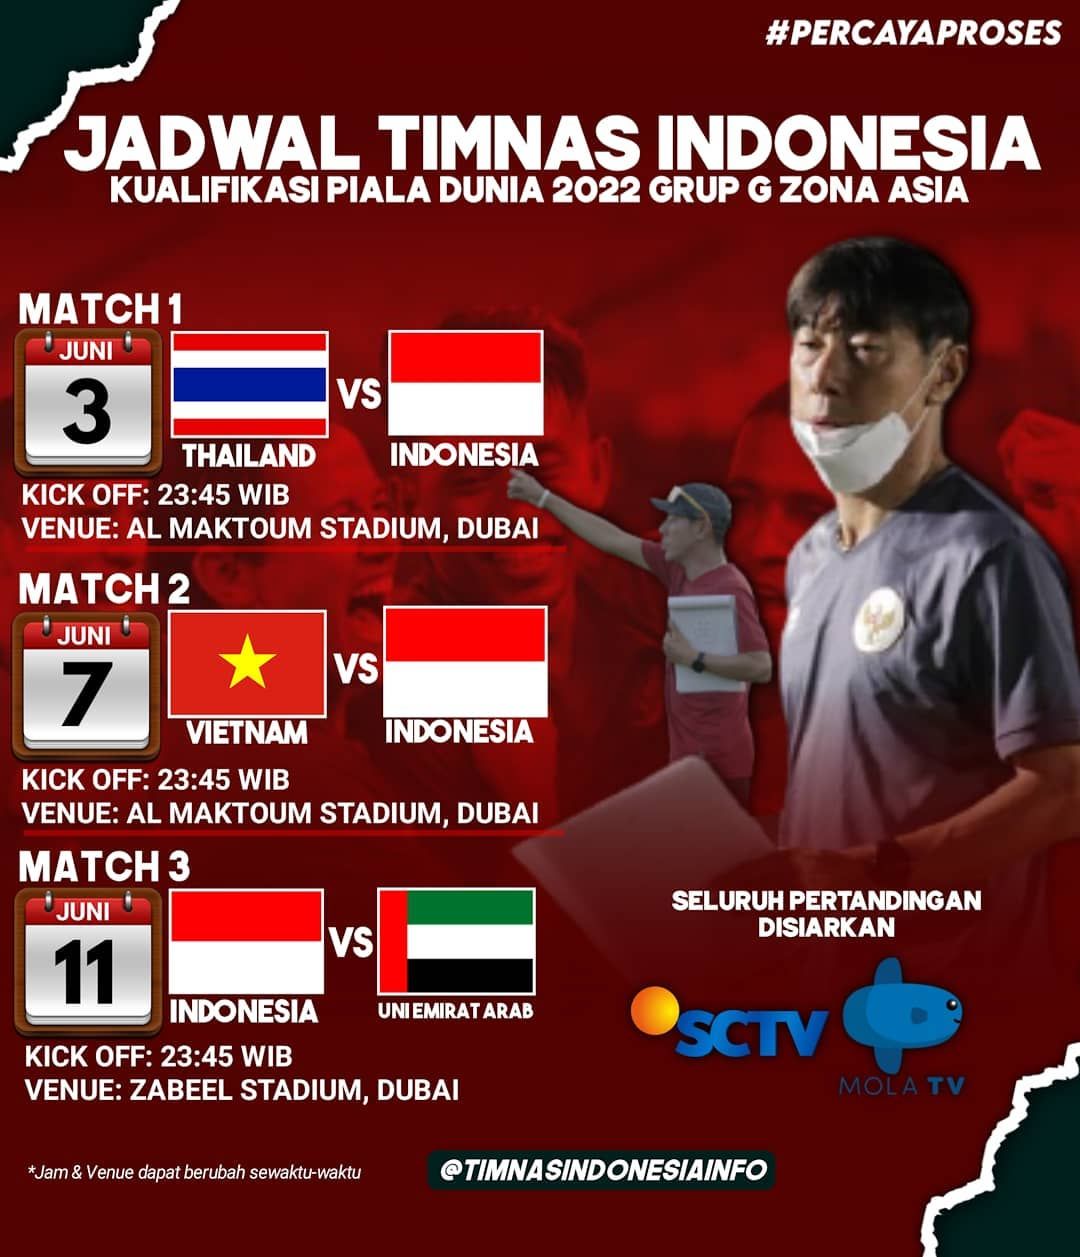 Kualifikasi Piala Dunia 2022 Jadwal Pertandingan Timnas Indonesia Vs Thailand Pikiran Rakyat Bekasi